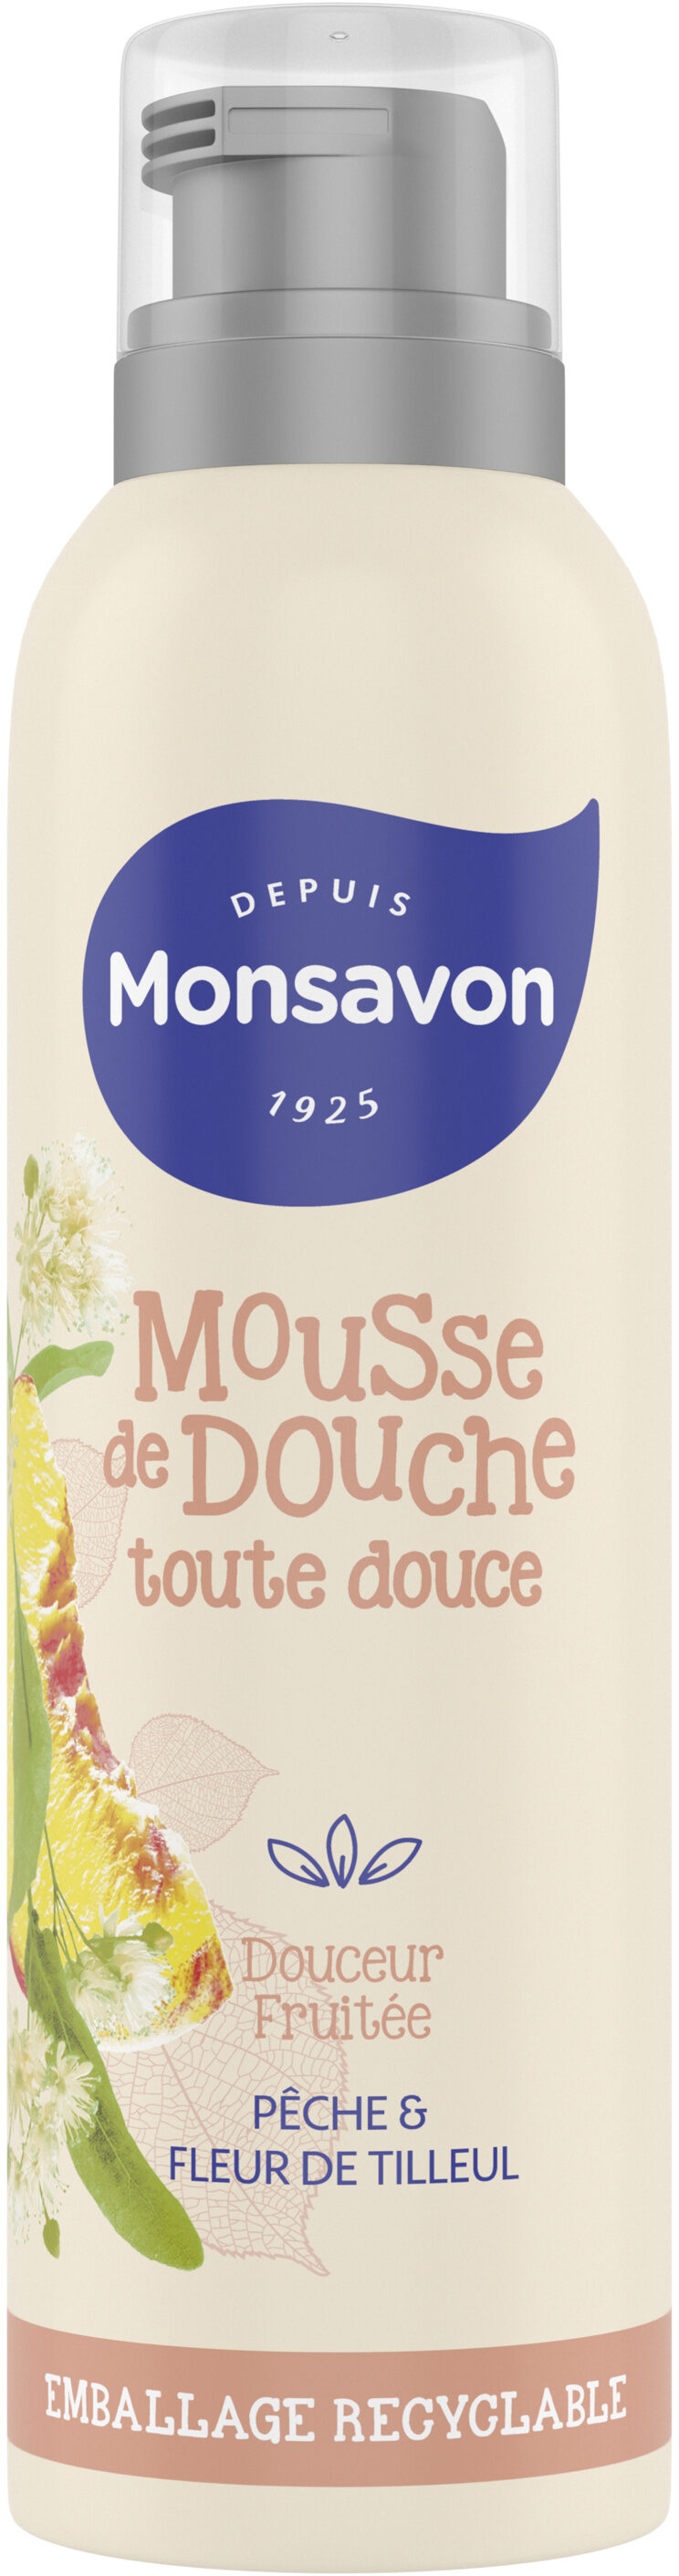 Monsavon Gel Douche Mousse Douceur Fruitée Pêche & Tilleul - Produkt - fr